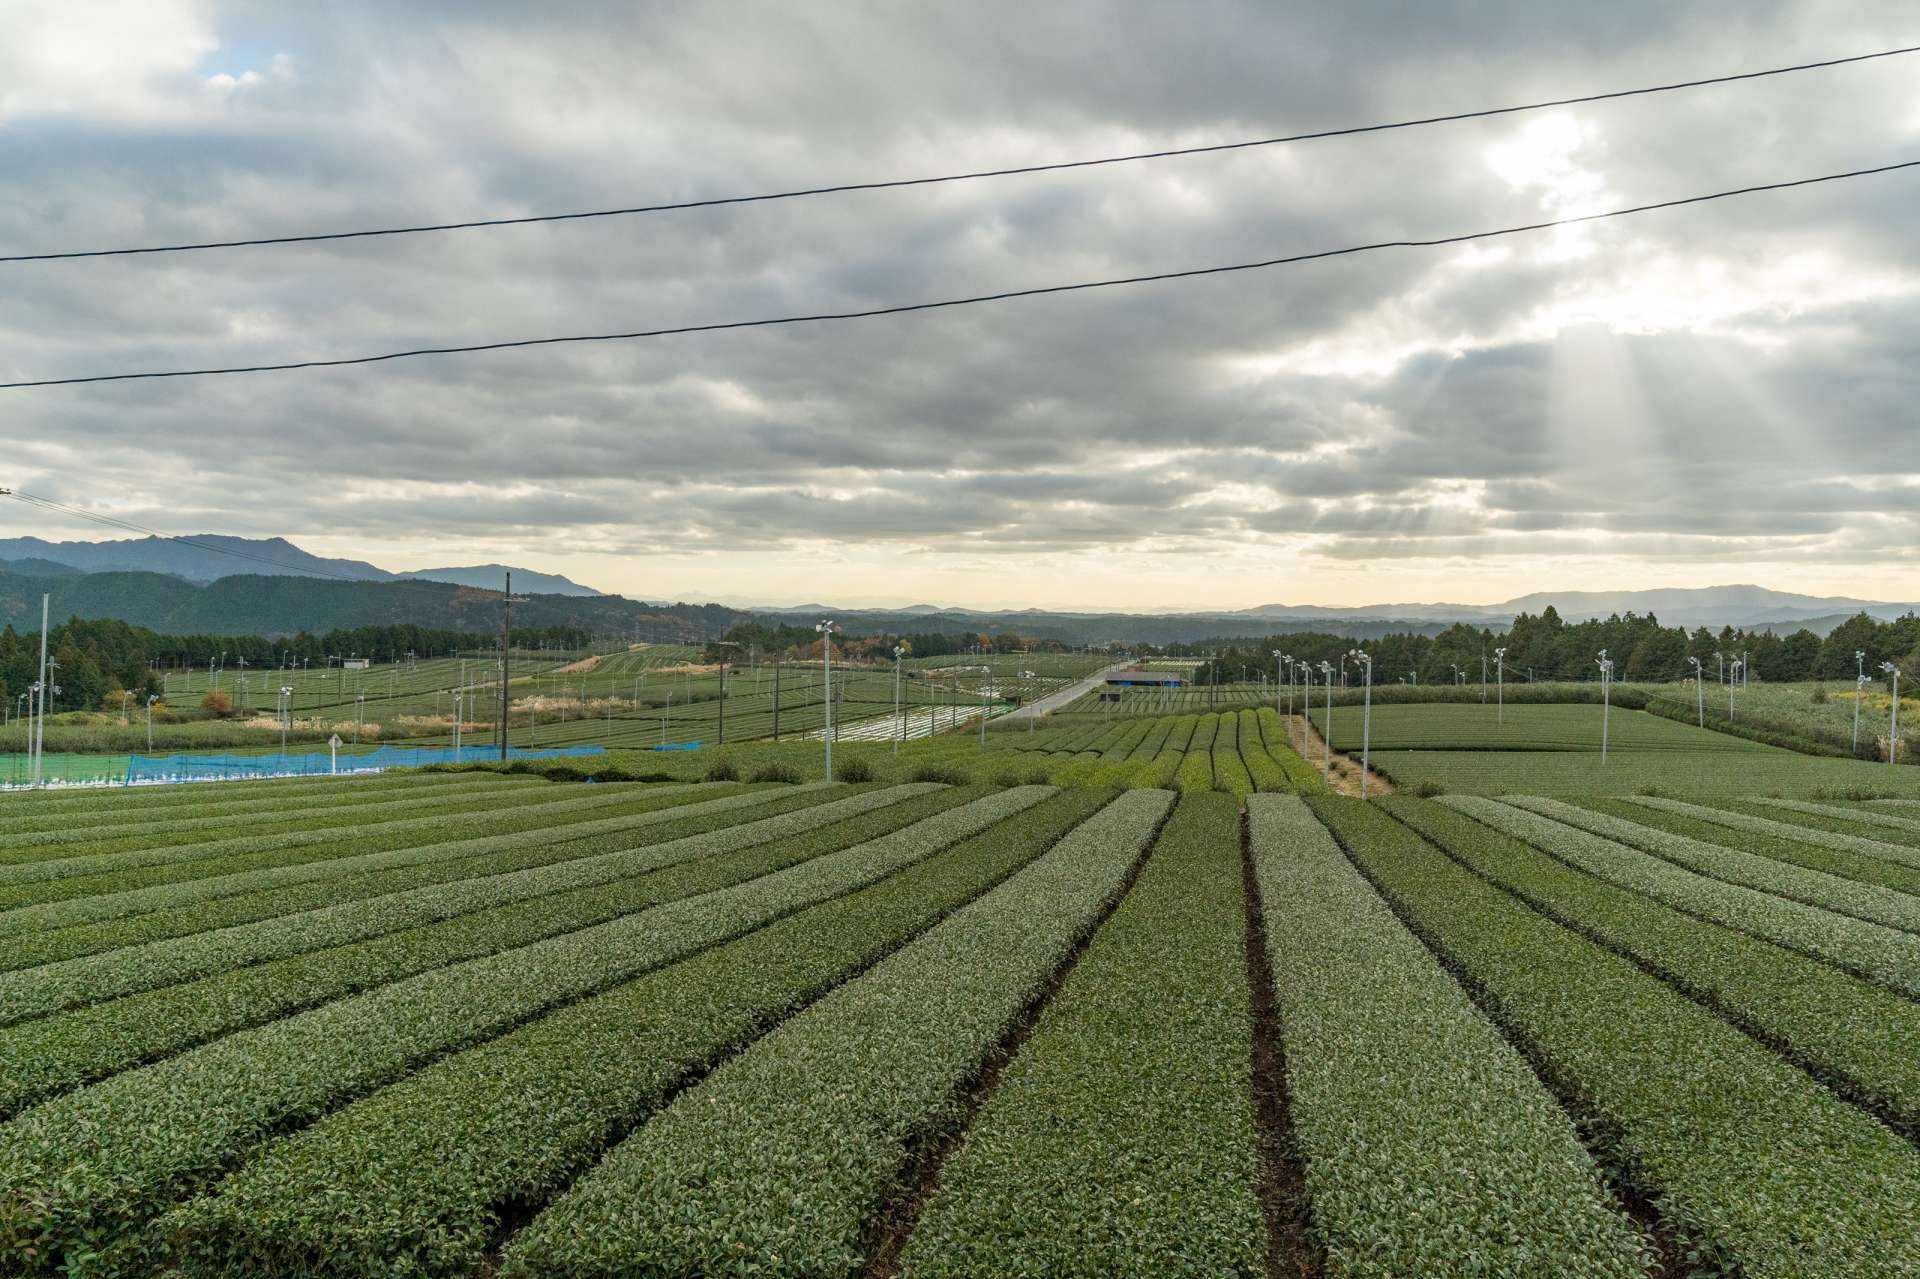 "Tongu Daichaen" possède la plus grande échelle de la préfecture de Shiga. La plantation de thé vert s'étend à l'infini